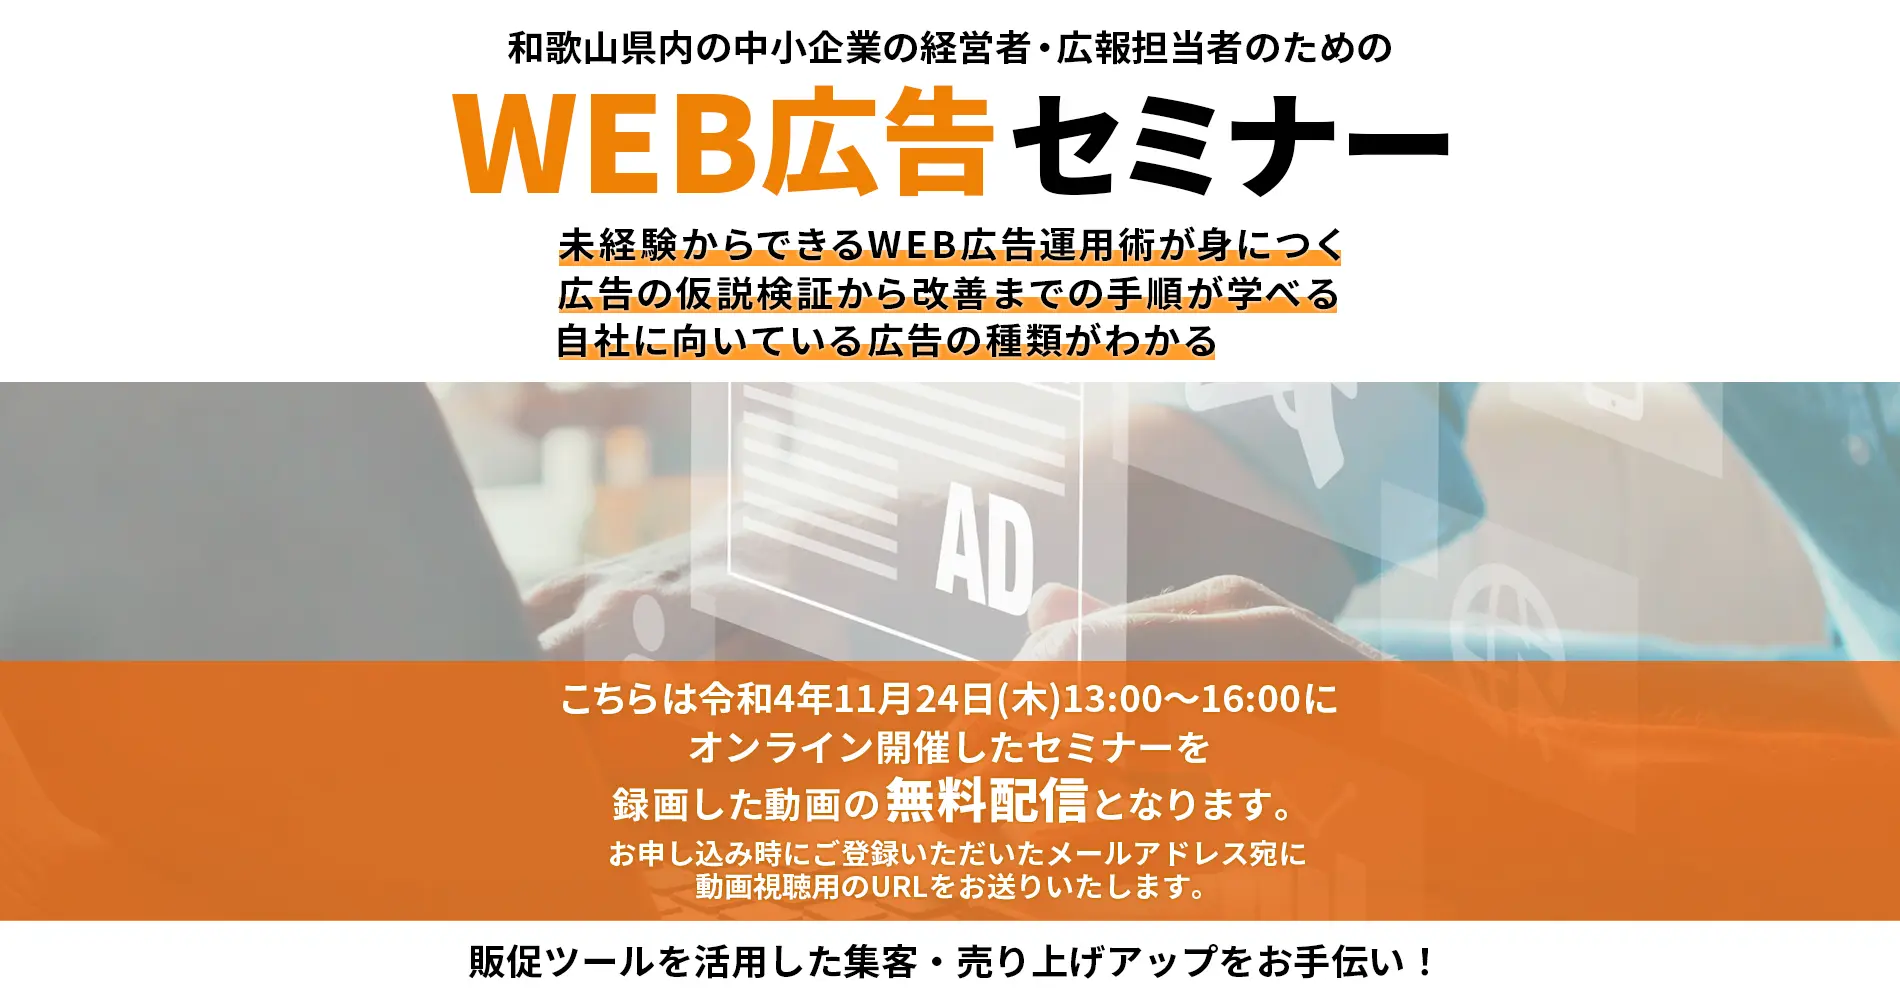 和歌山県内の中小企業の経営者、広報担当者のための、 WEB広告セミナー